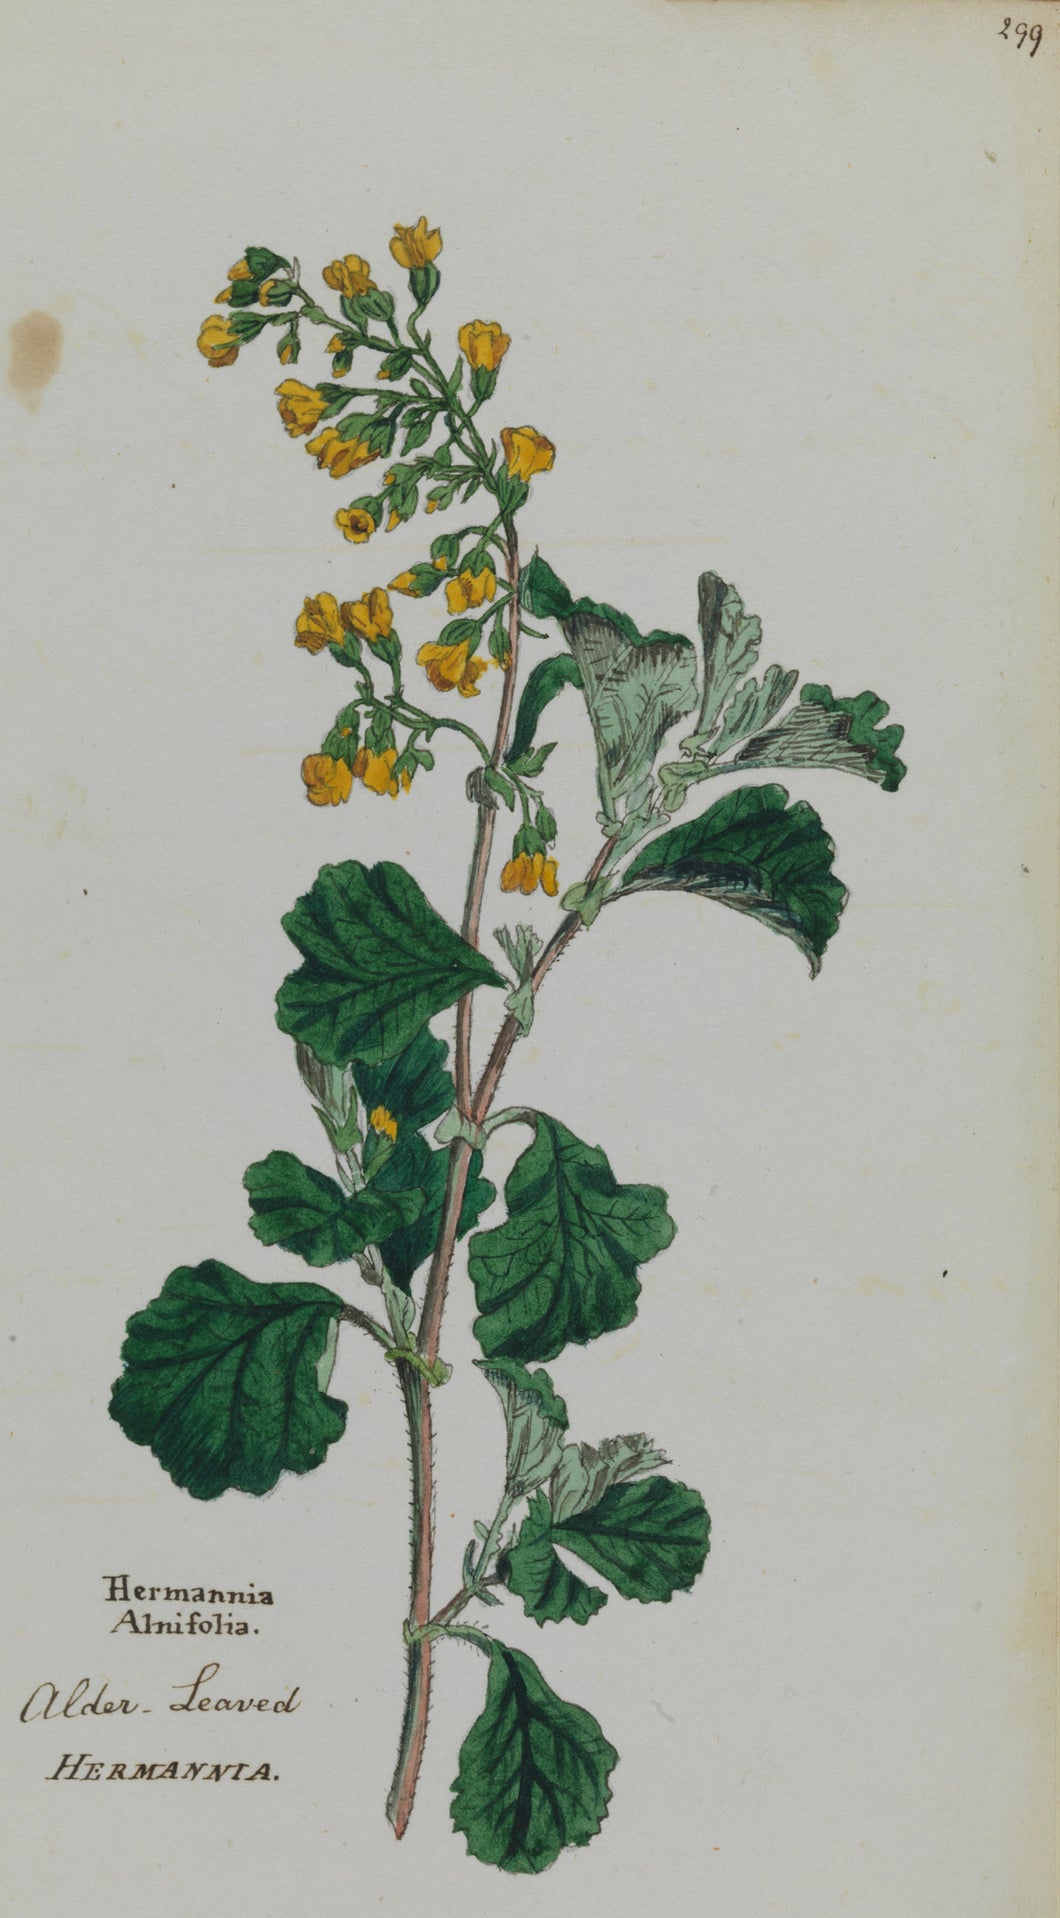 Alder-leaved Hermannia